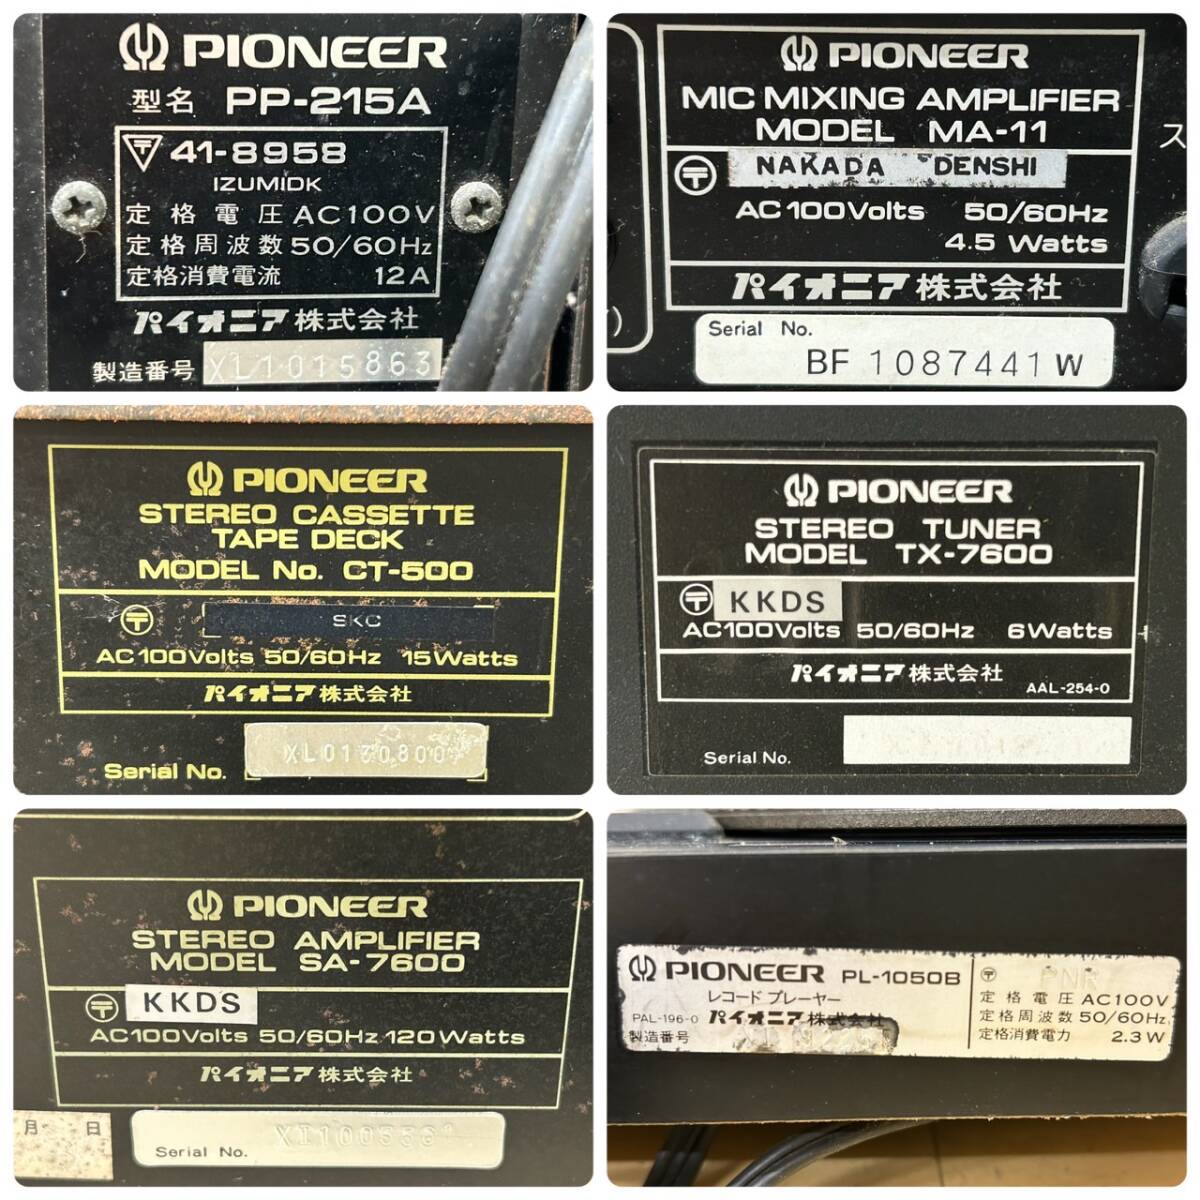 LA037627(061)-309/TN12000[ Nagoya ограничение получения ]PIONEER Pioneer 6 пункт суммировать PP-215A / MA-11 / CT-500 / TX-7600 / SA-7600 / PL-1050B